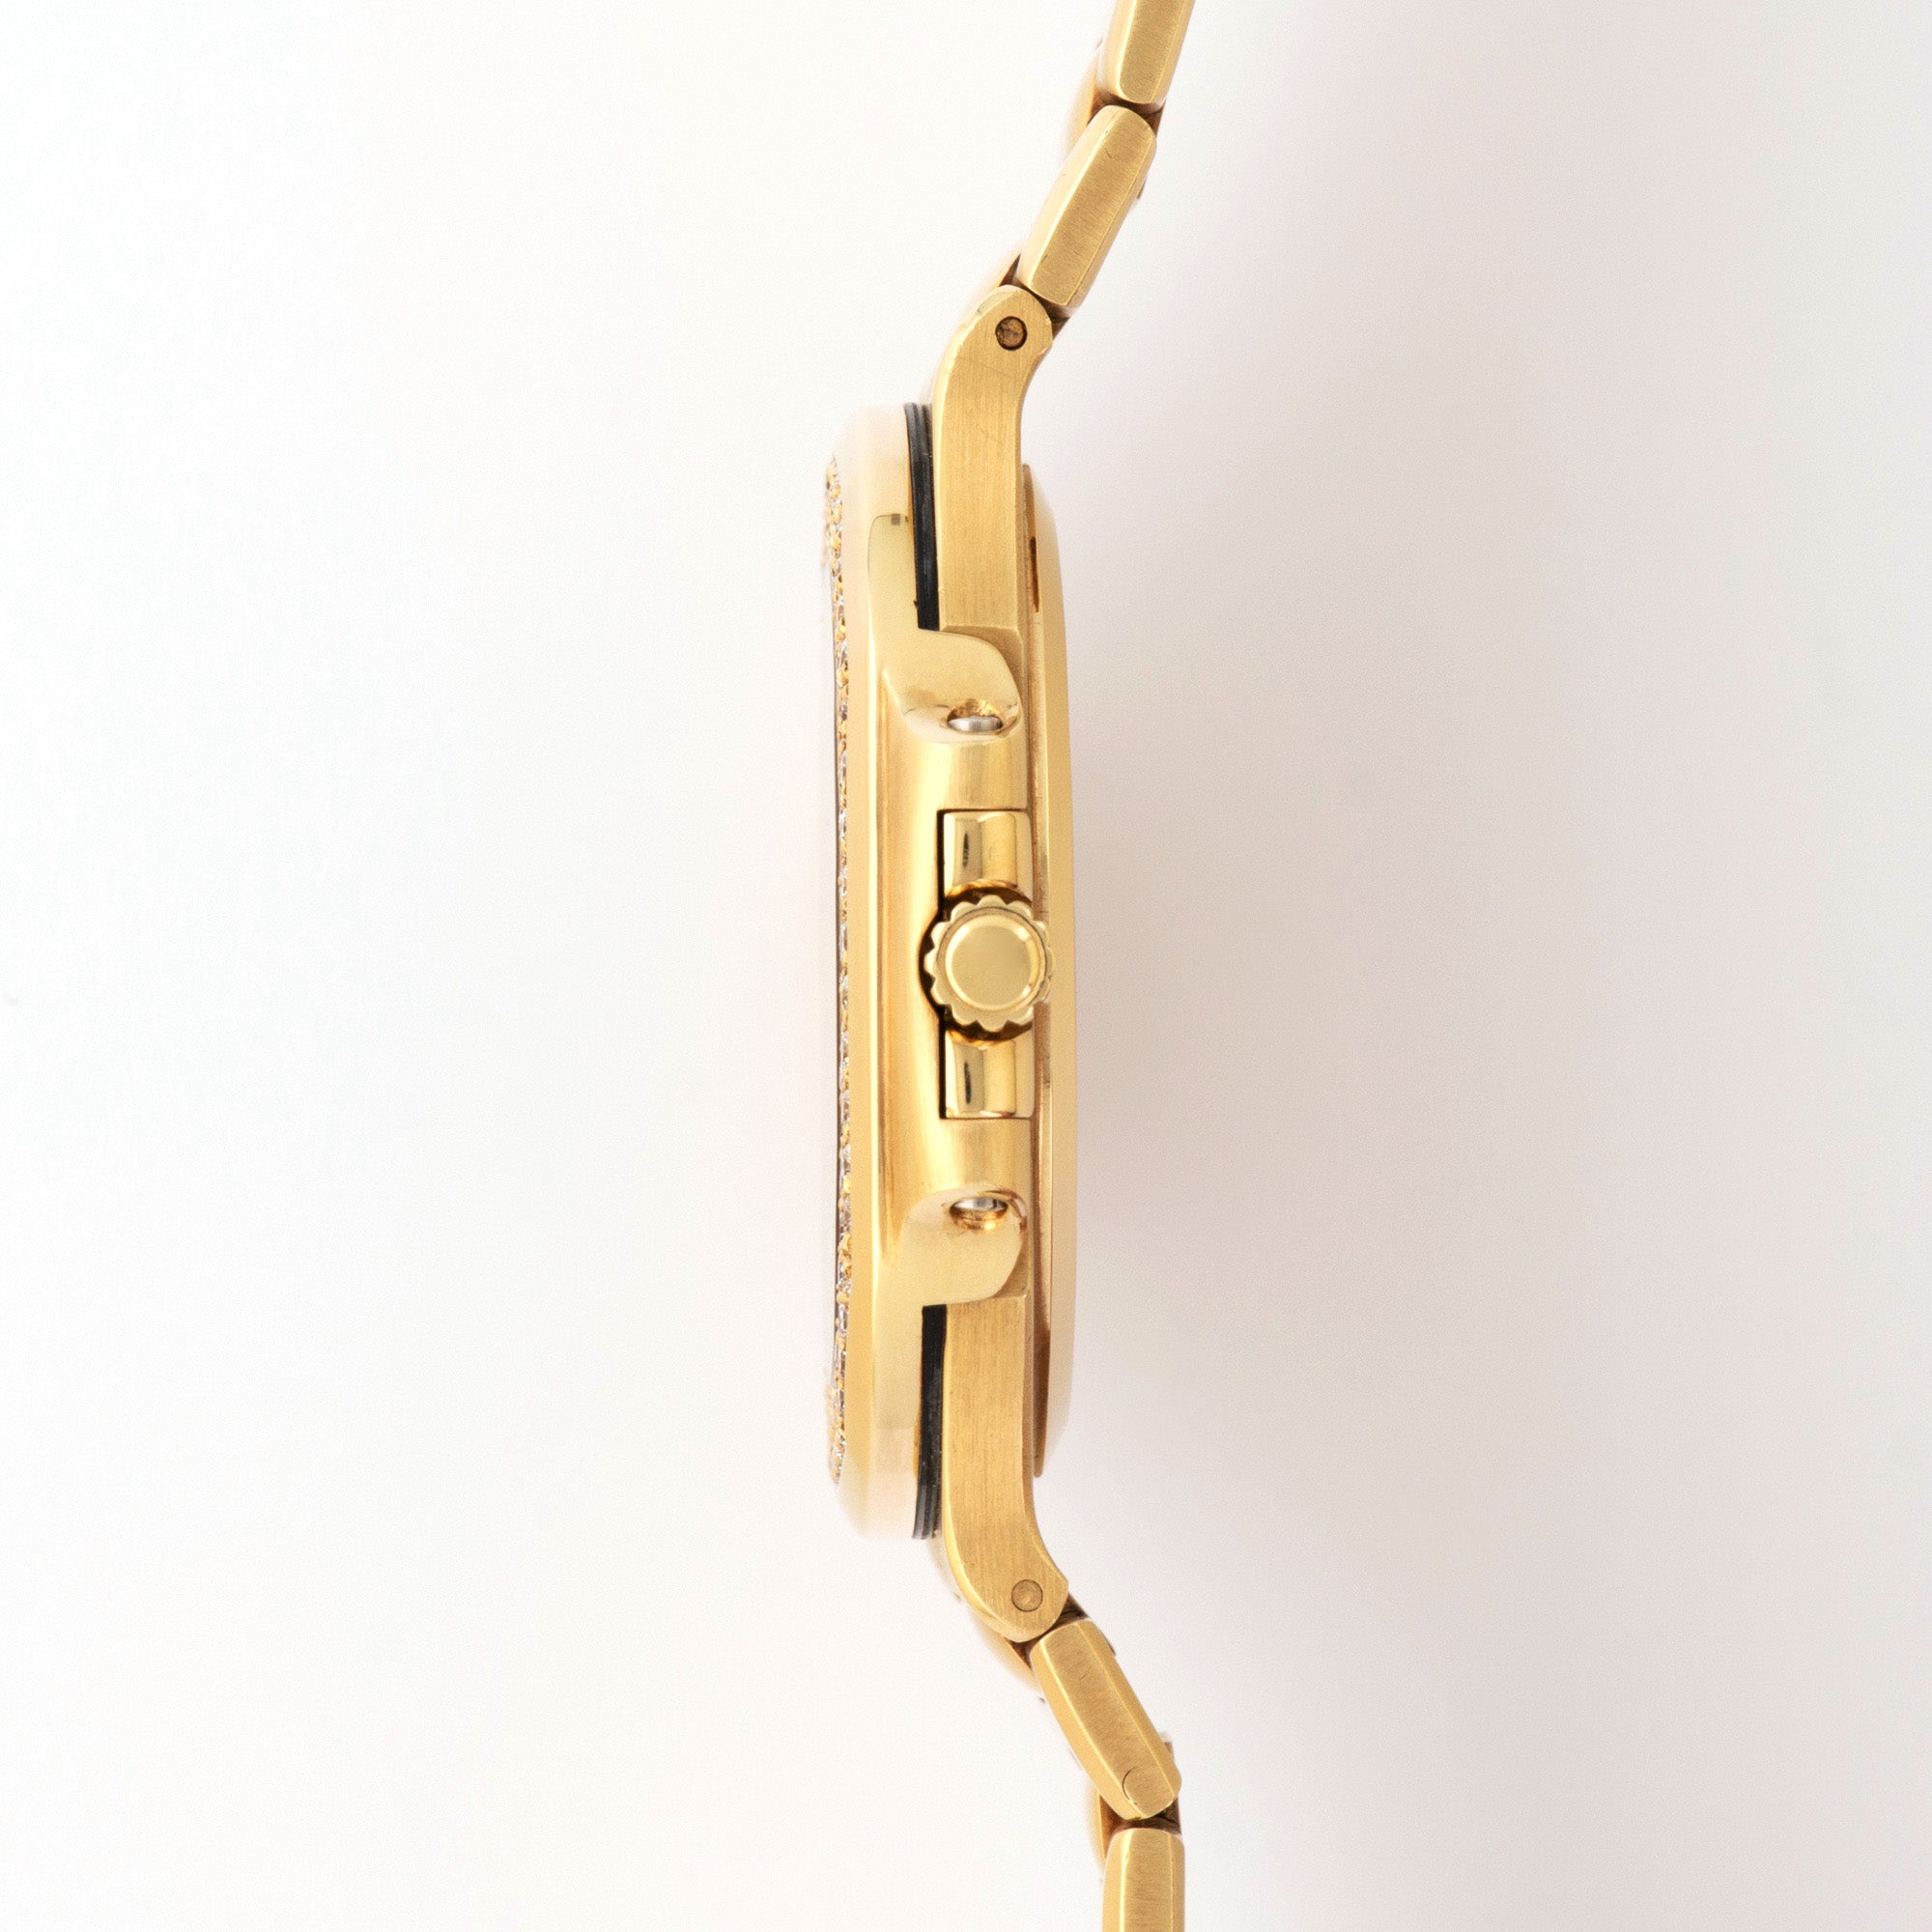 Patek Philippe - Patek Philippe Yellow Gold Nautilus Diamond Jumbo Watch Ref. 3700 - The Keystone Watches